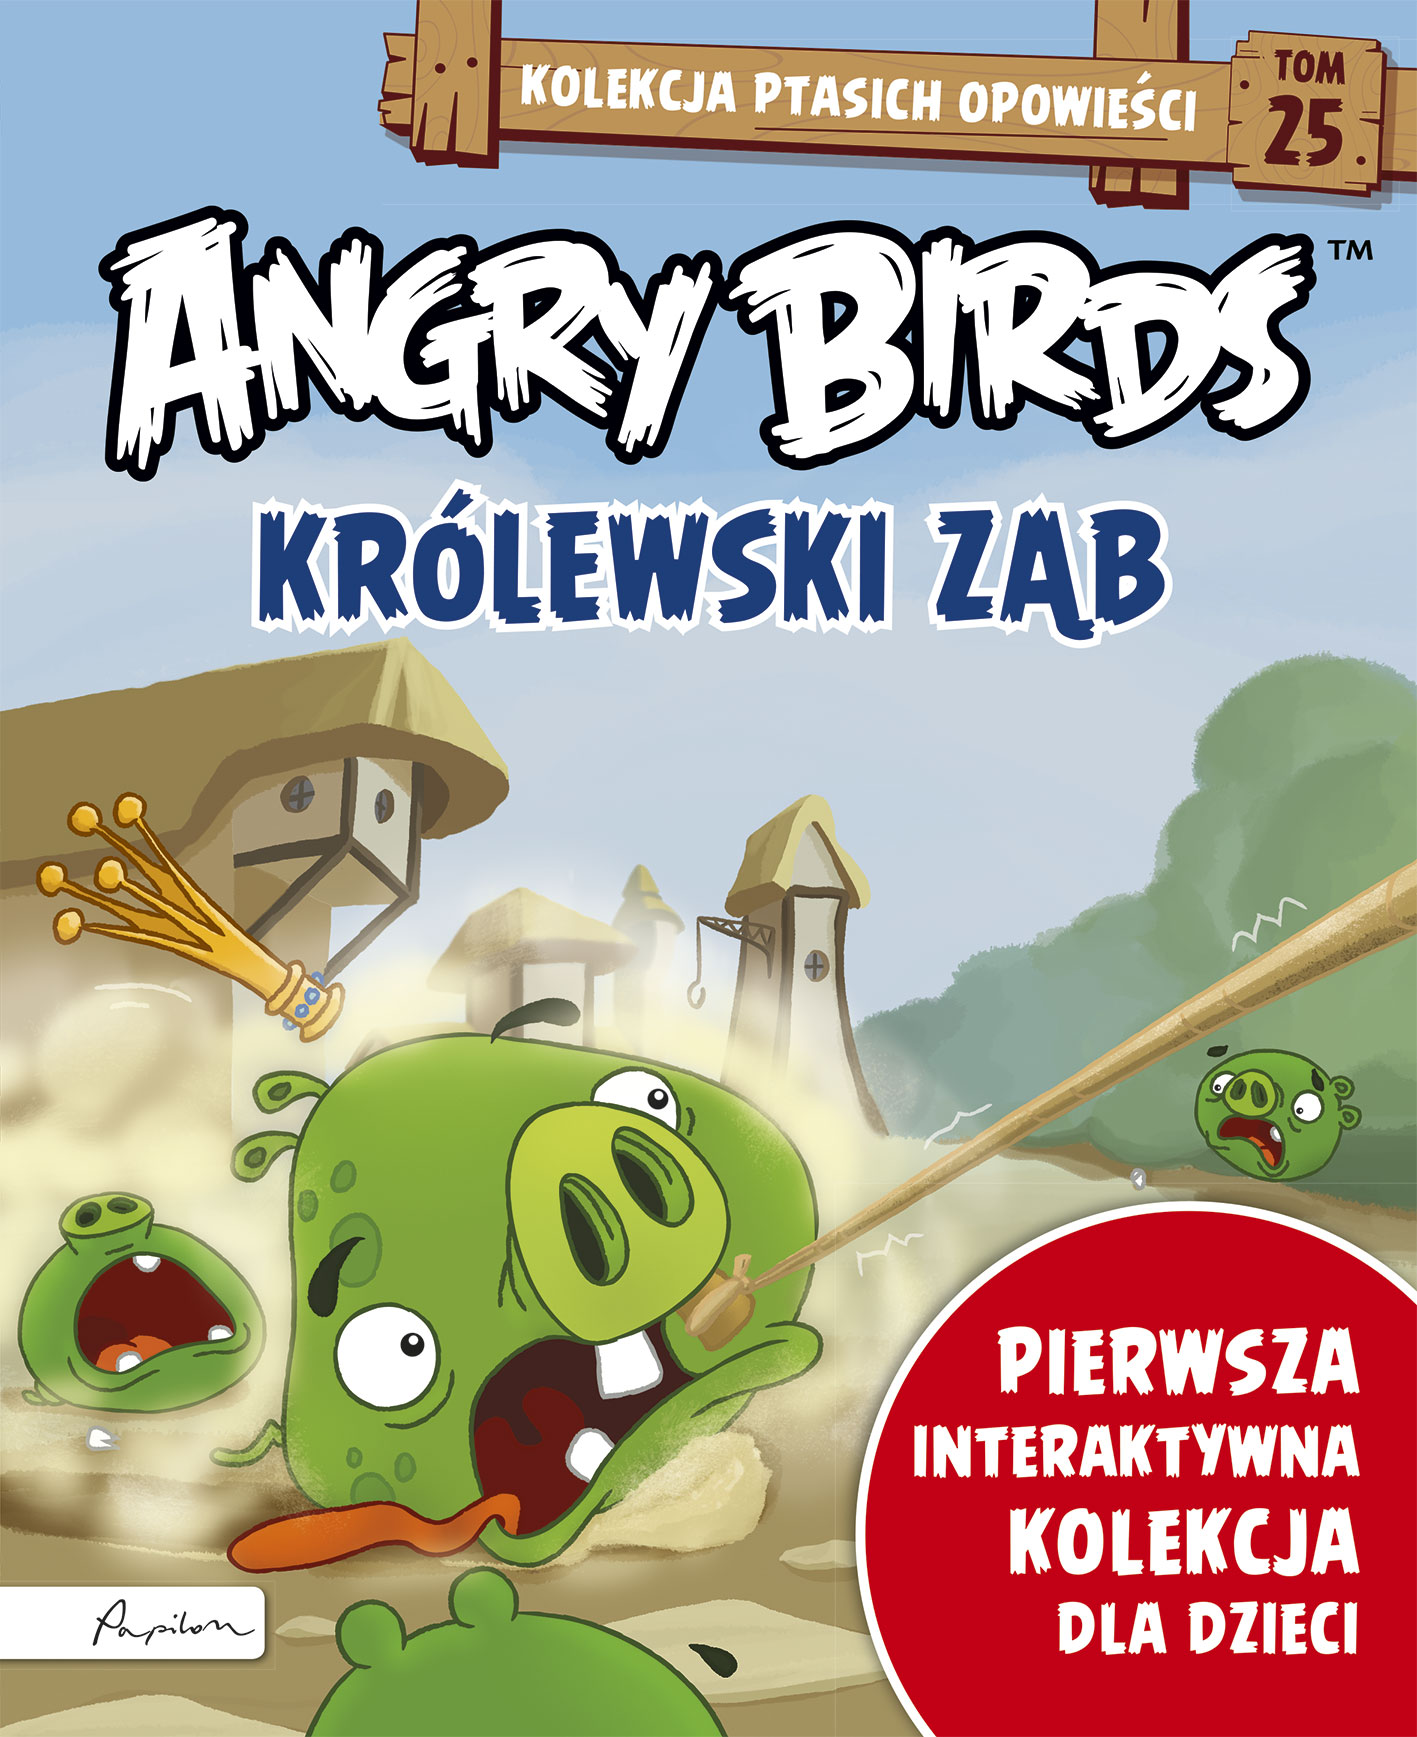 Angry Birds. Kolekcja ptasich opowieści 25. Królewski ząb.